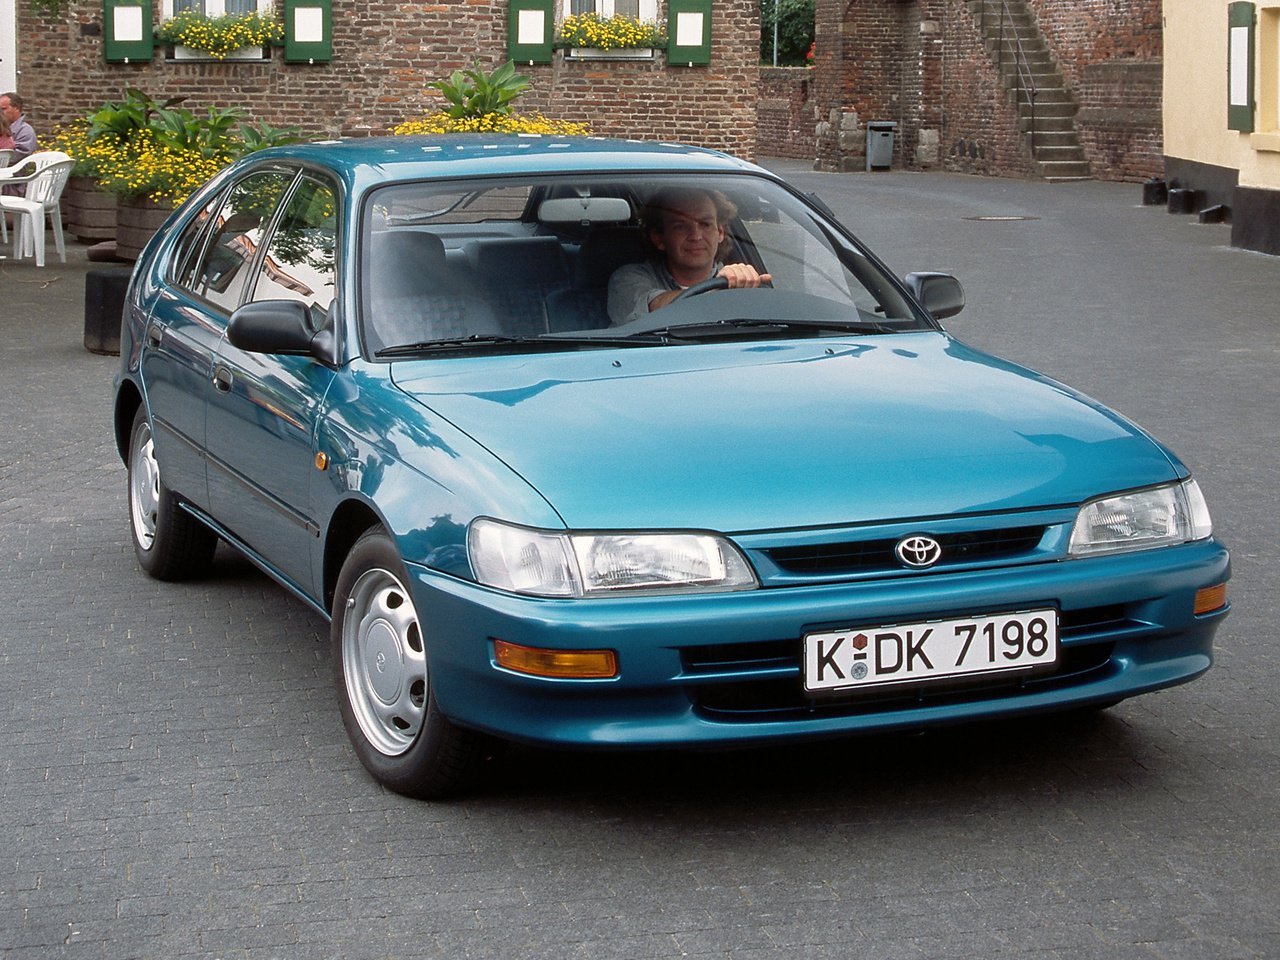 хэтчбек 5 дв. Toyota Corolla 1991 - 1997г выпуска модификация 1.6 MT (114 л.с.)